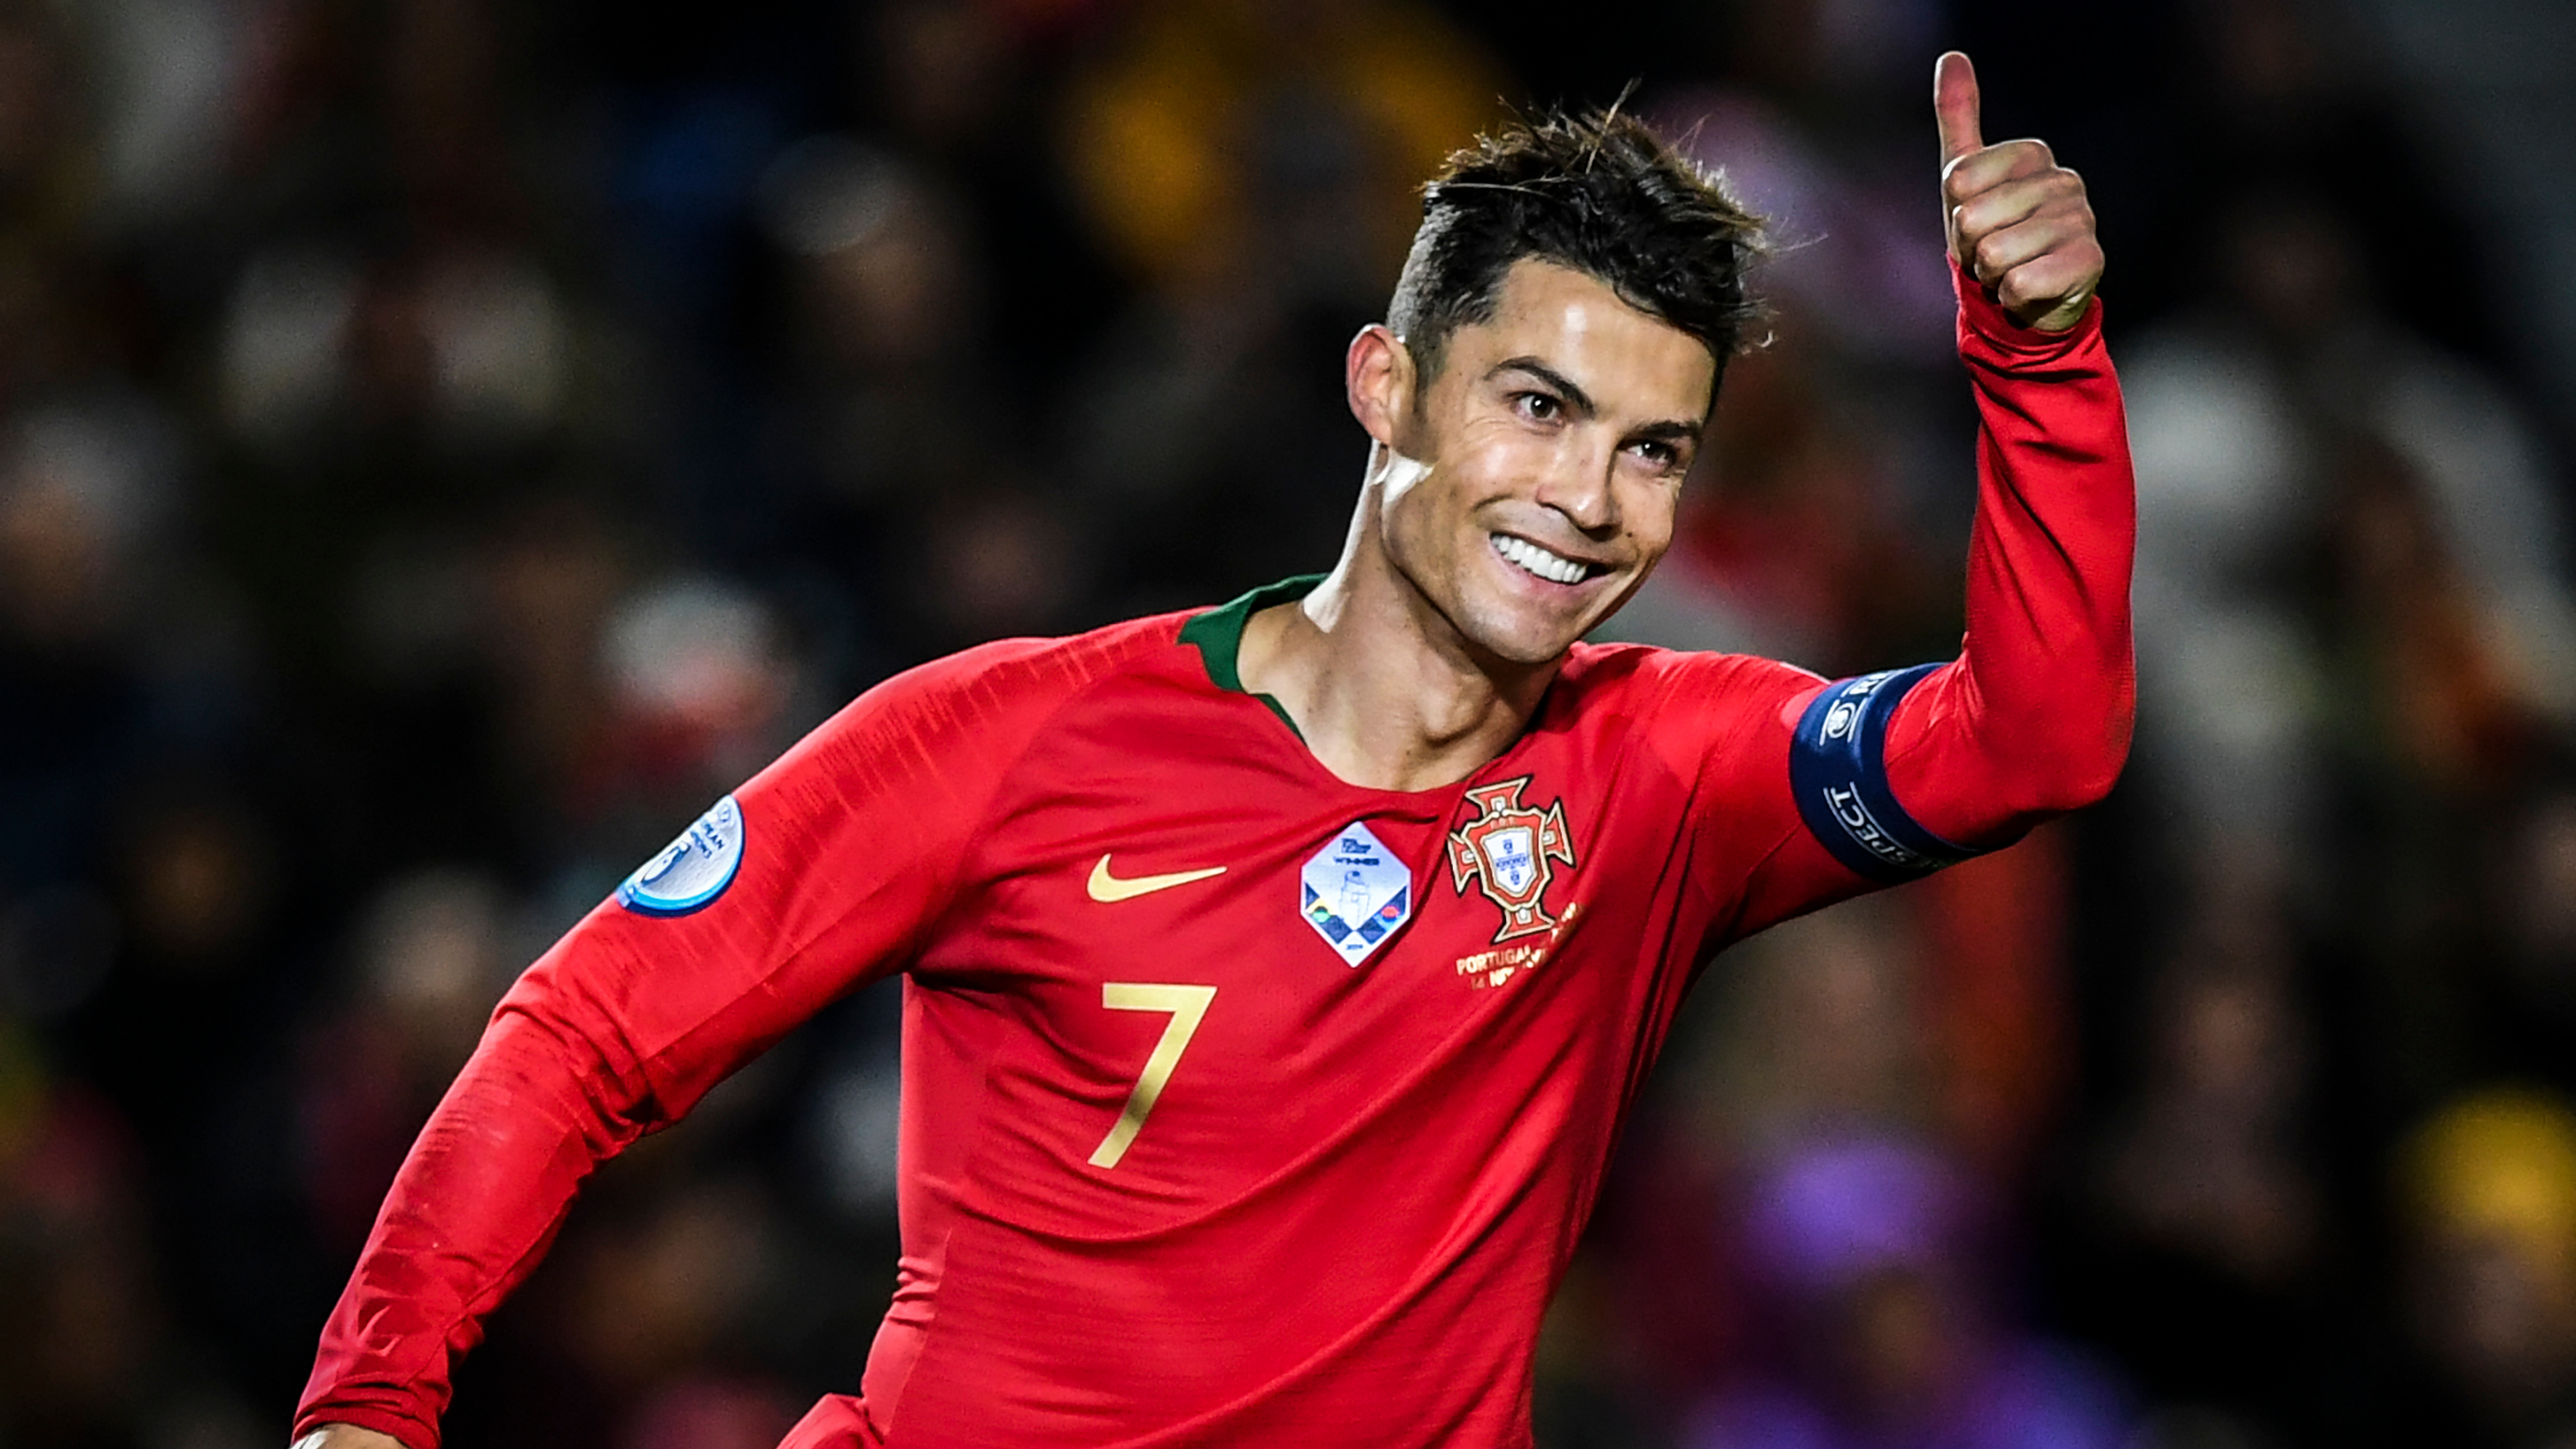 Ronaldo tài trợ giúp Bồ Đào Nha chống chọi với dịch bệnh Covid-19 ...